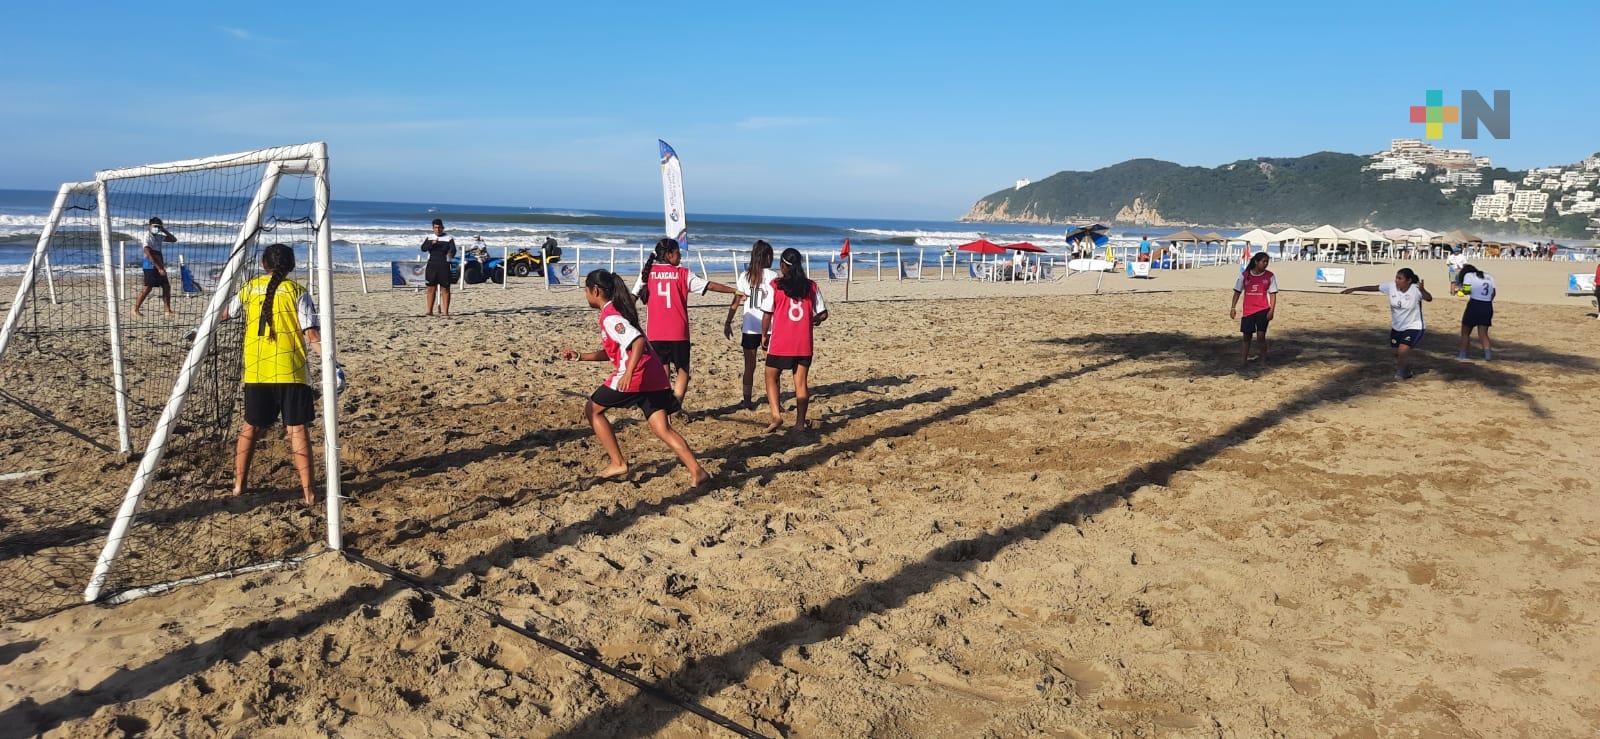 Brilla Veracruz en futbol en Festival Mar y Playa 2021